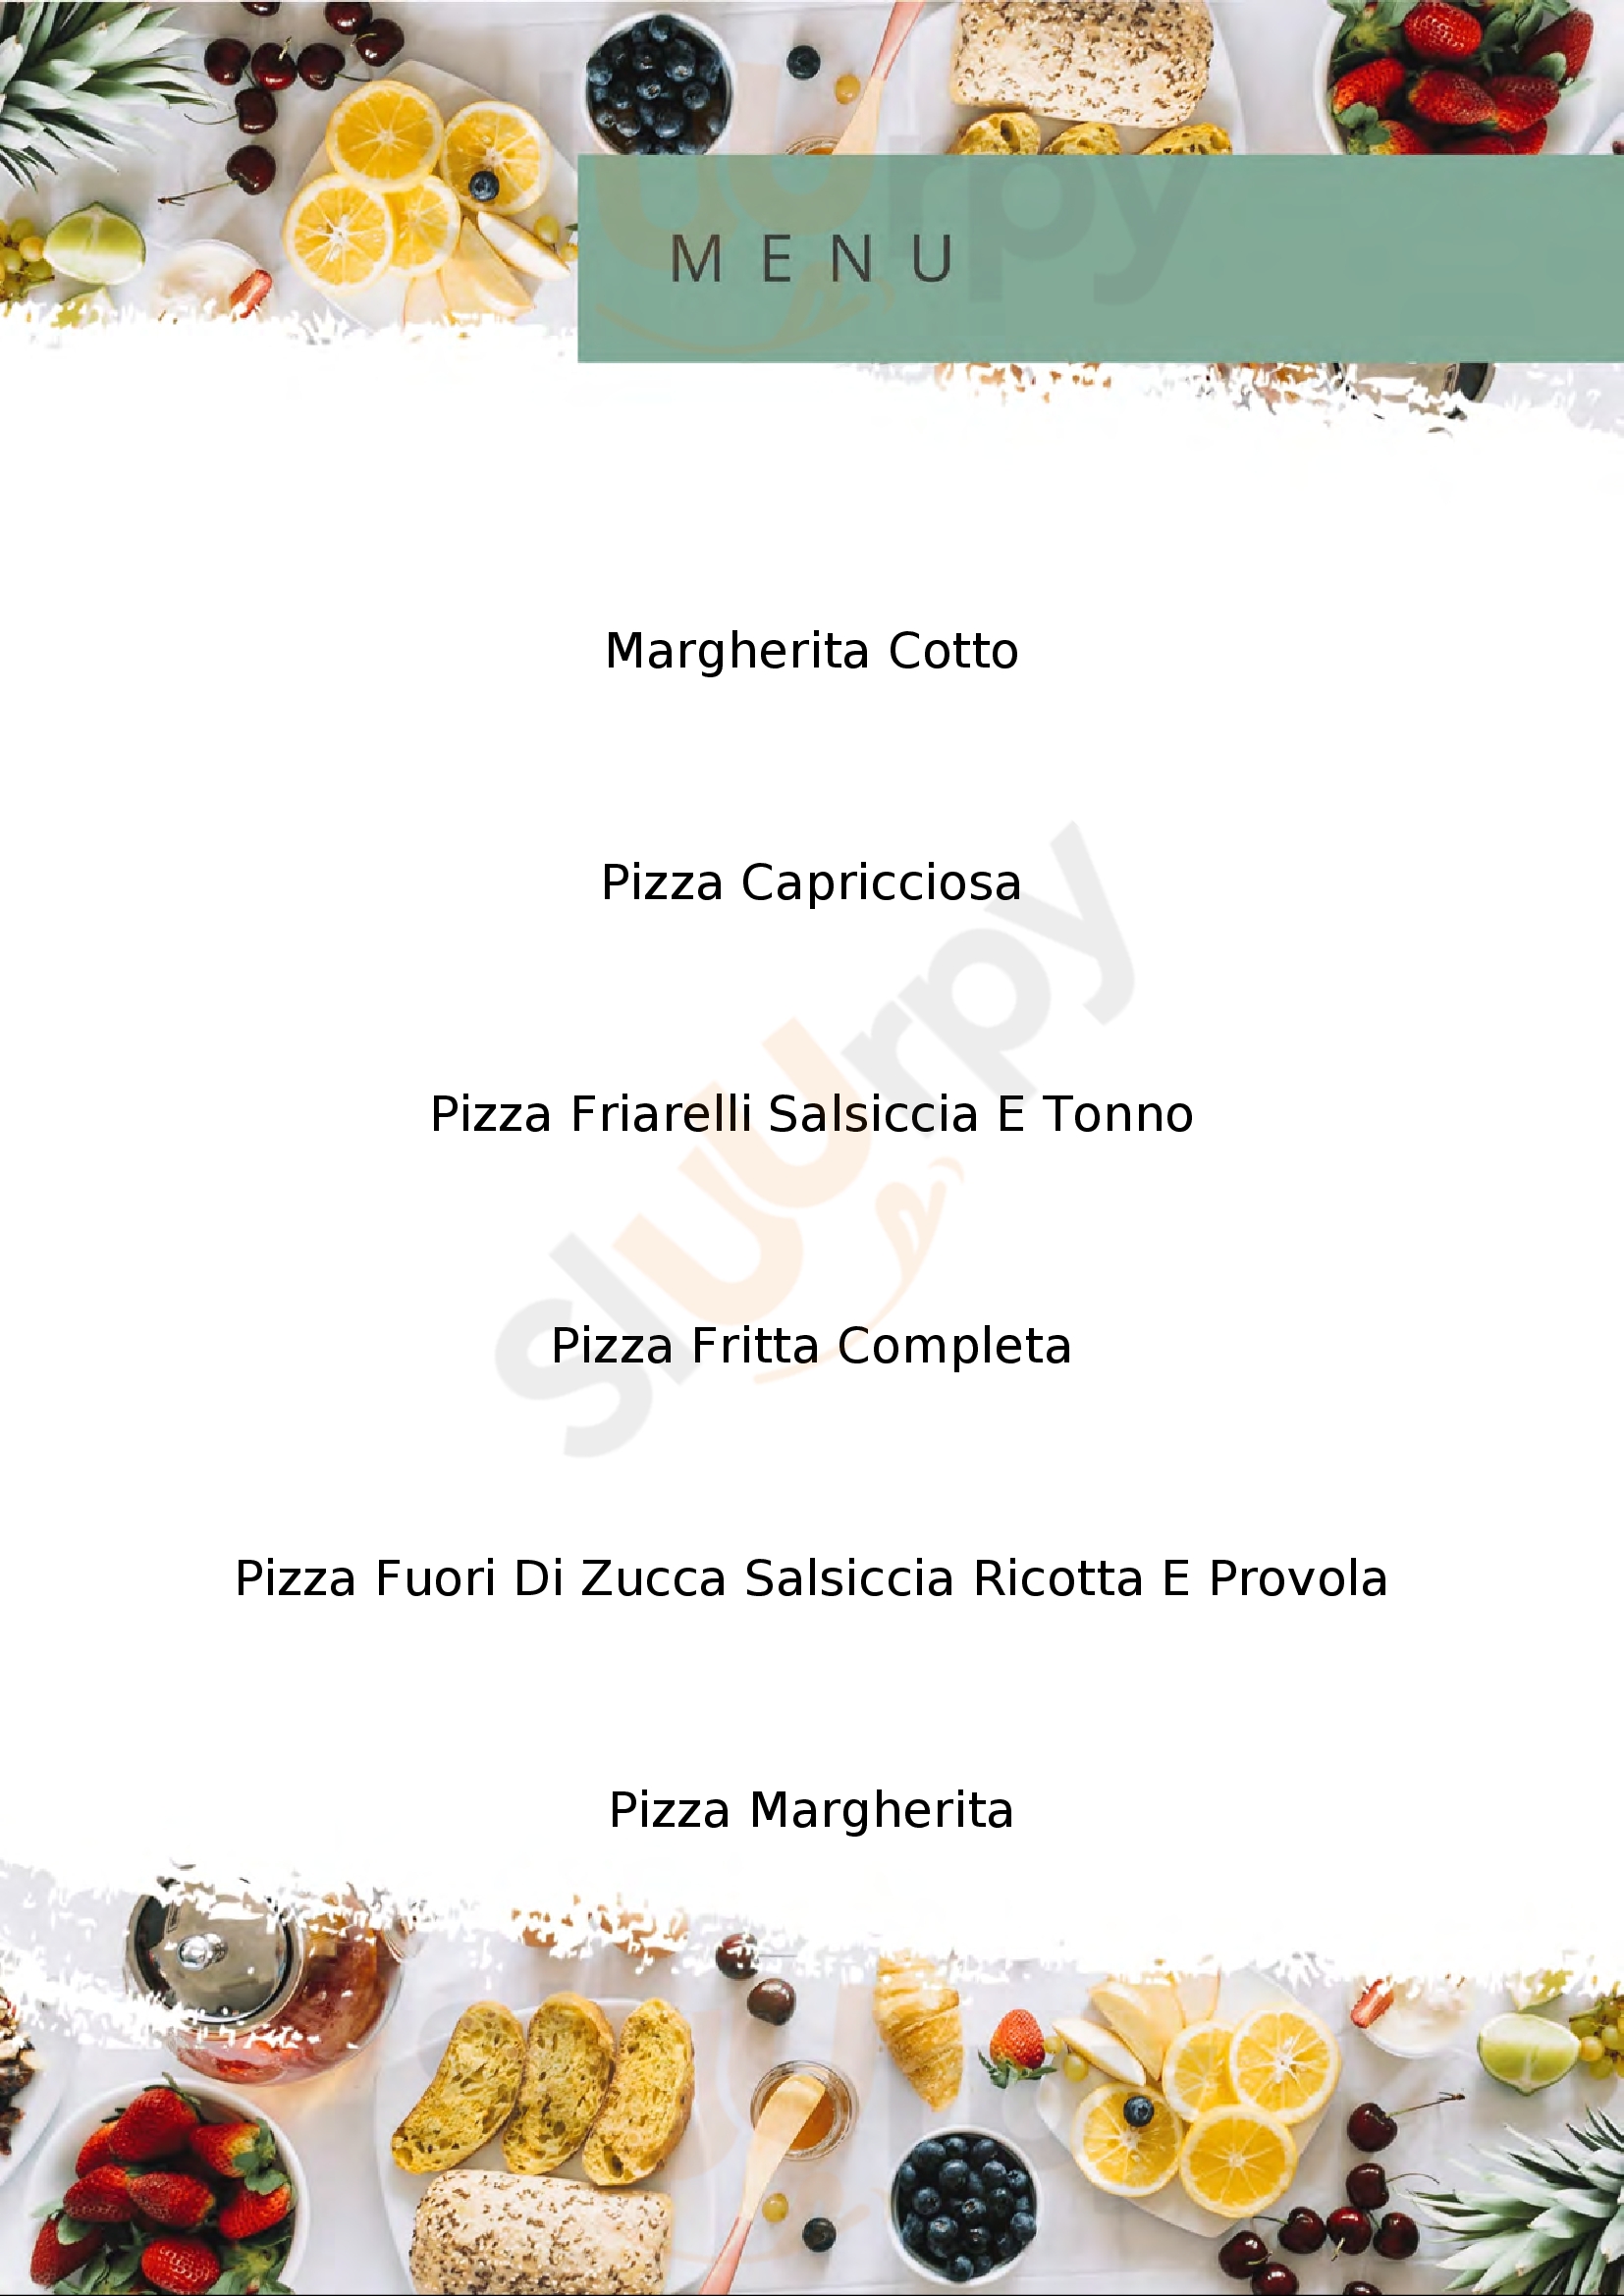 Pizzeria 2 passi a toledo Napoli menù 1 pagina